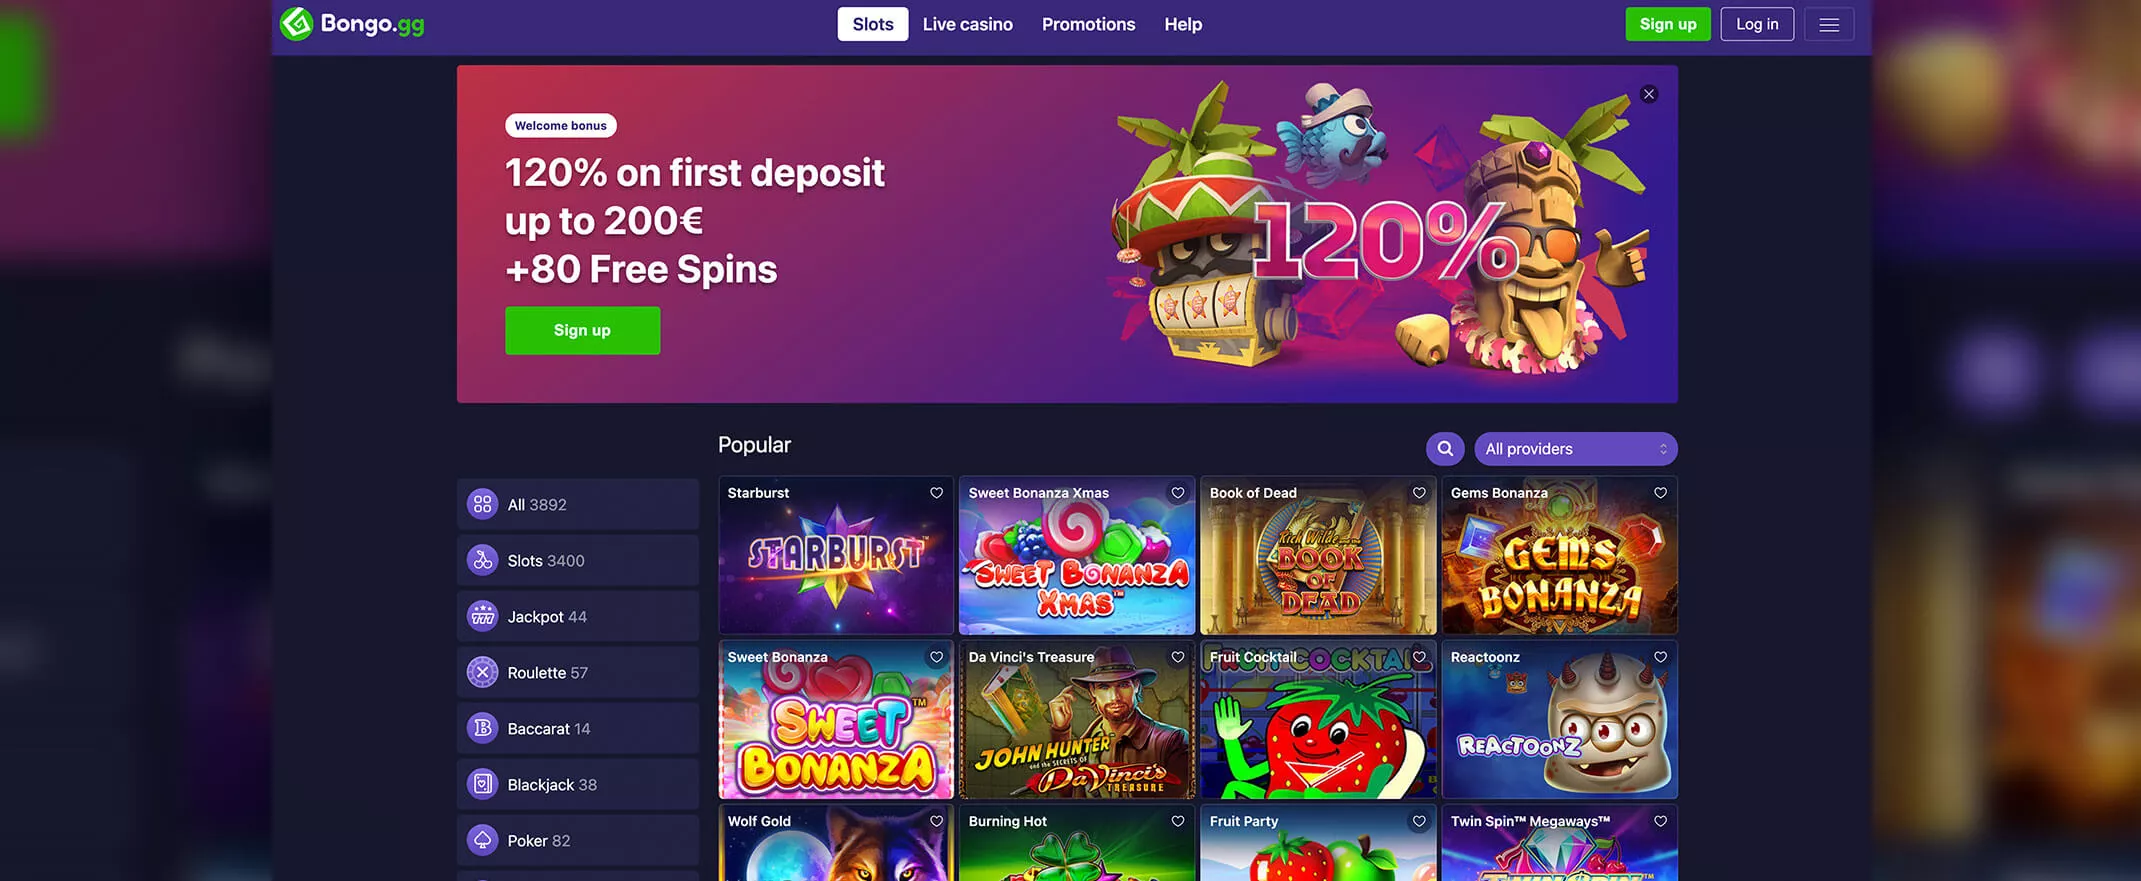 Bongo Casino screenshot of the homepage